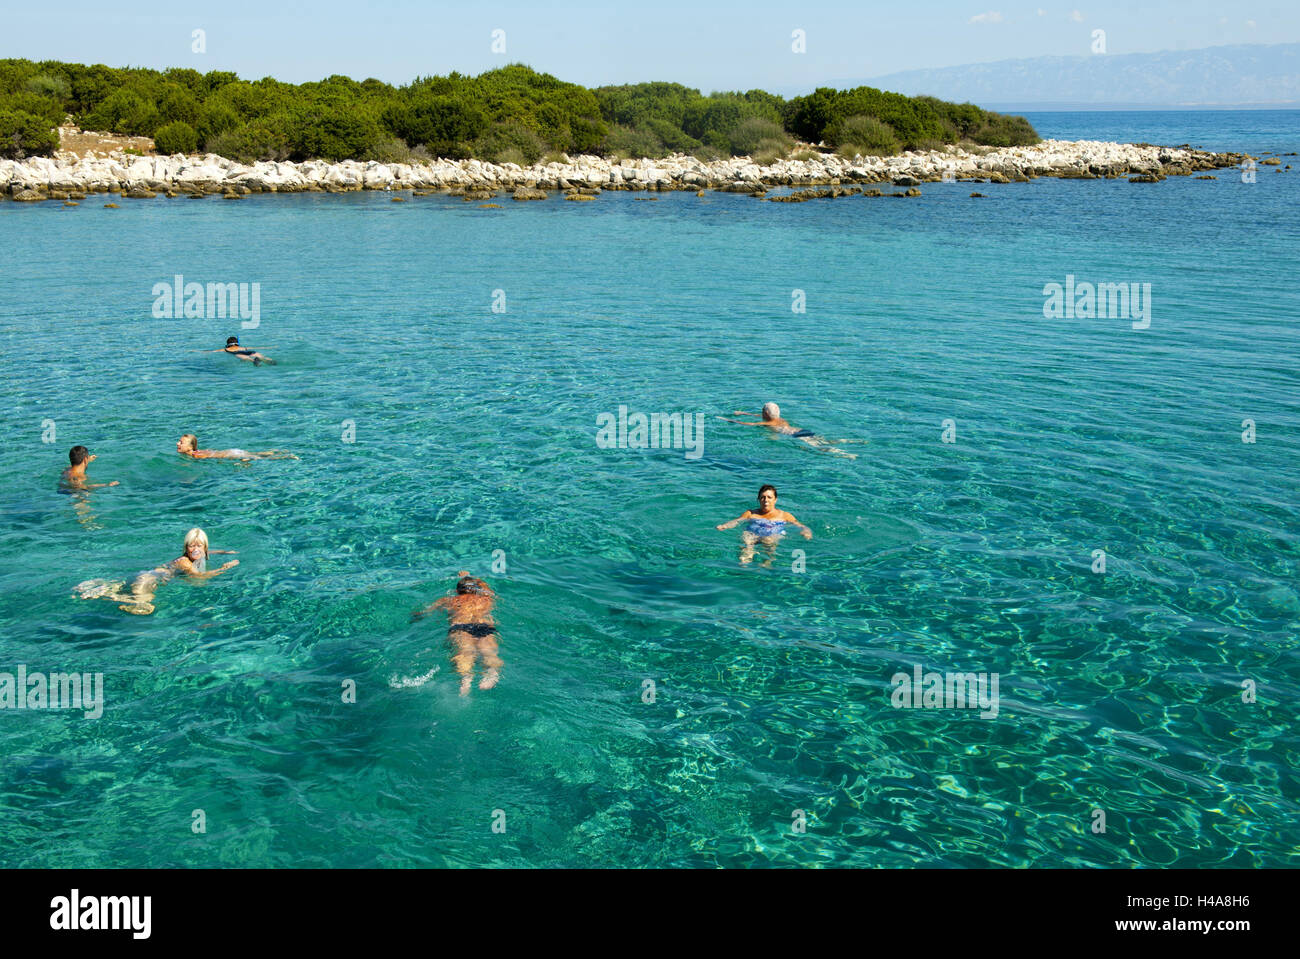 Croatia, island Losinj, Veli Losinj, boot excursion, person swim in the sea, Stock Photo